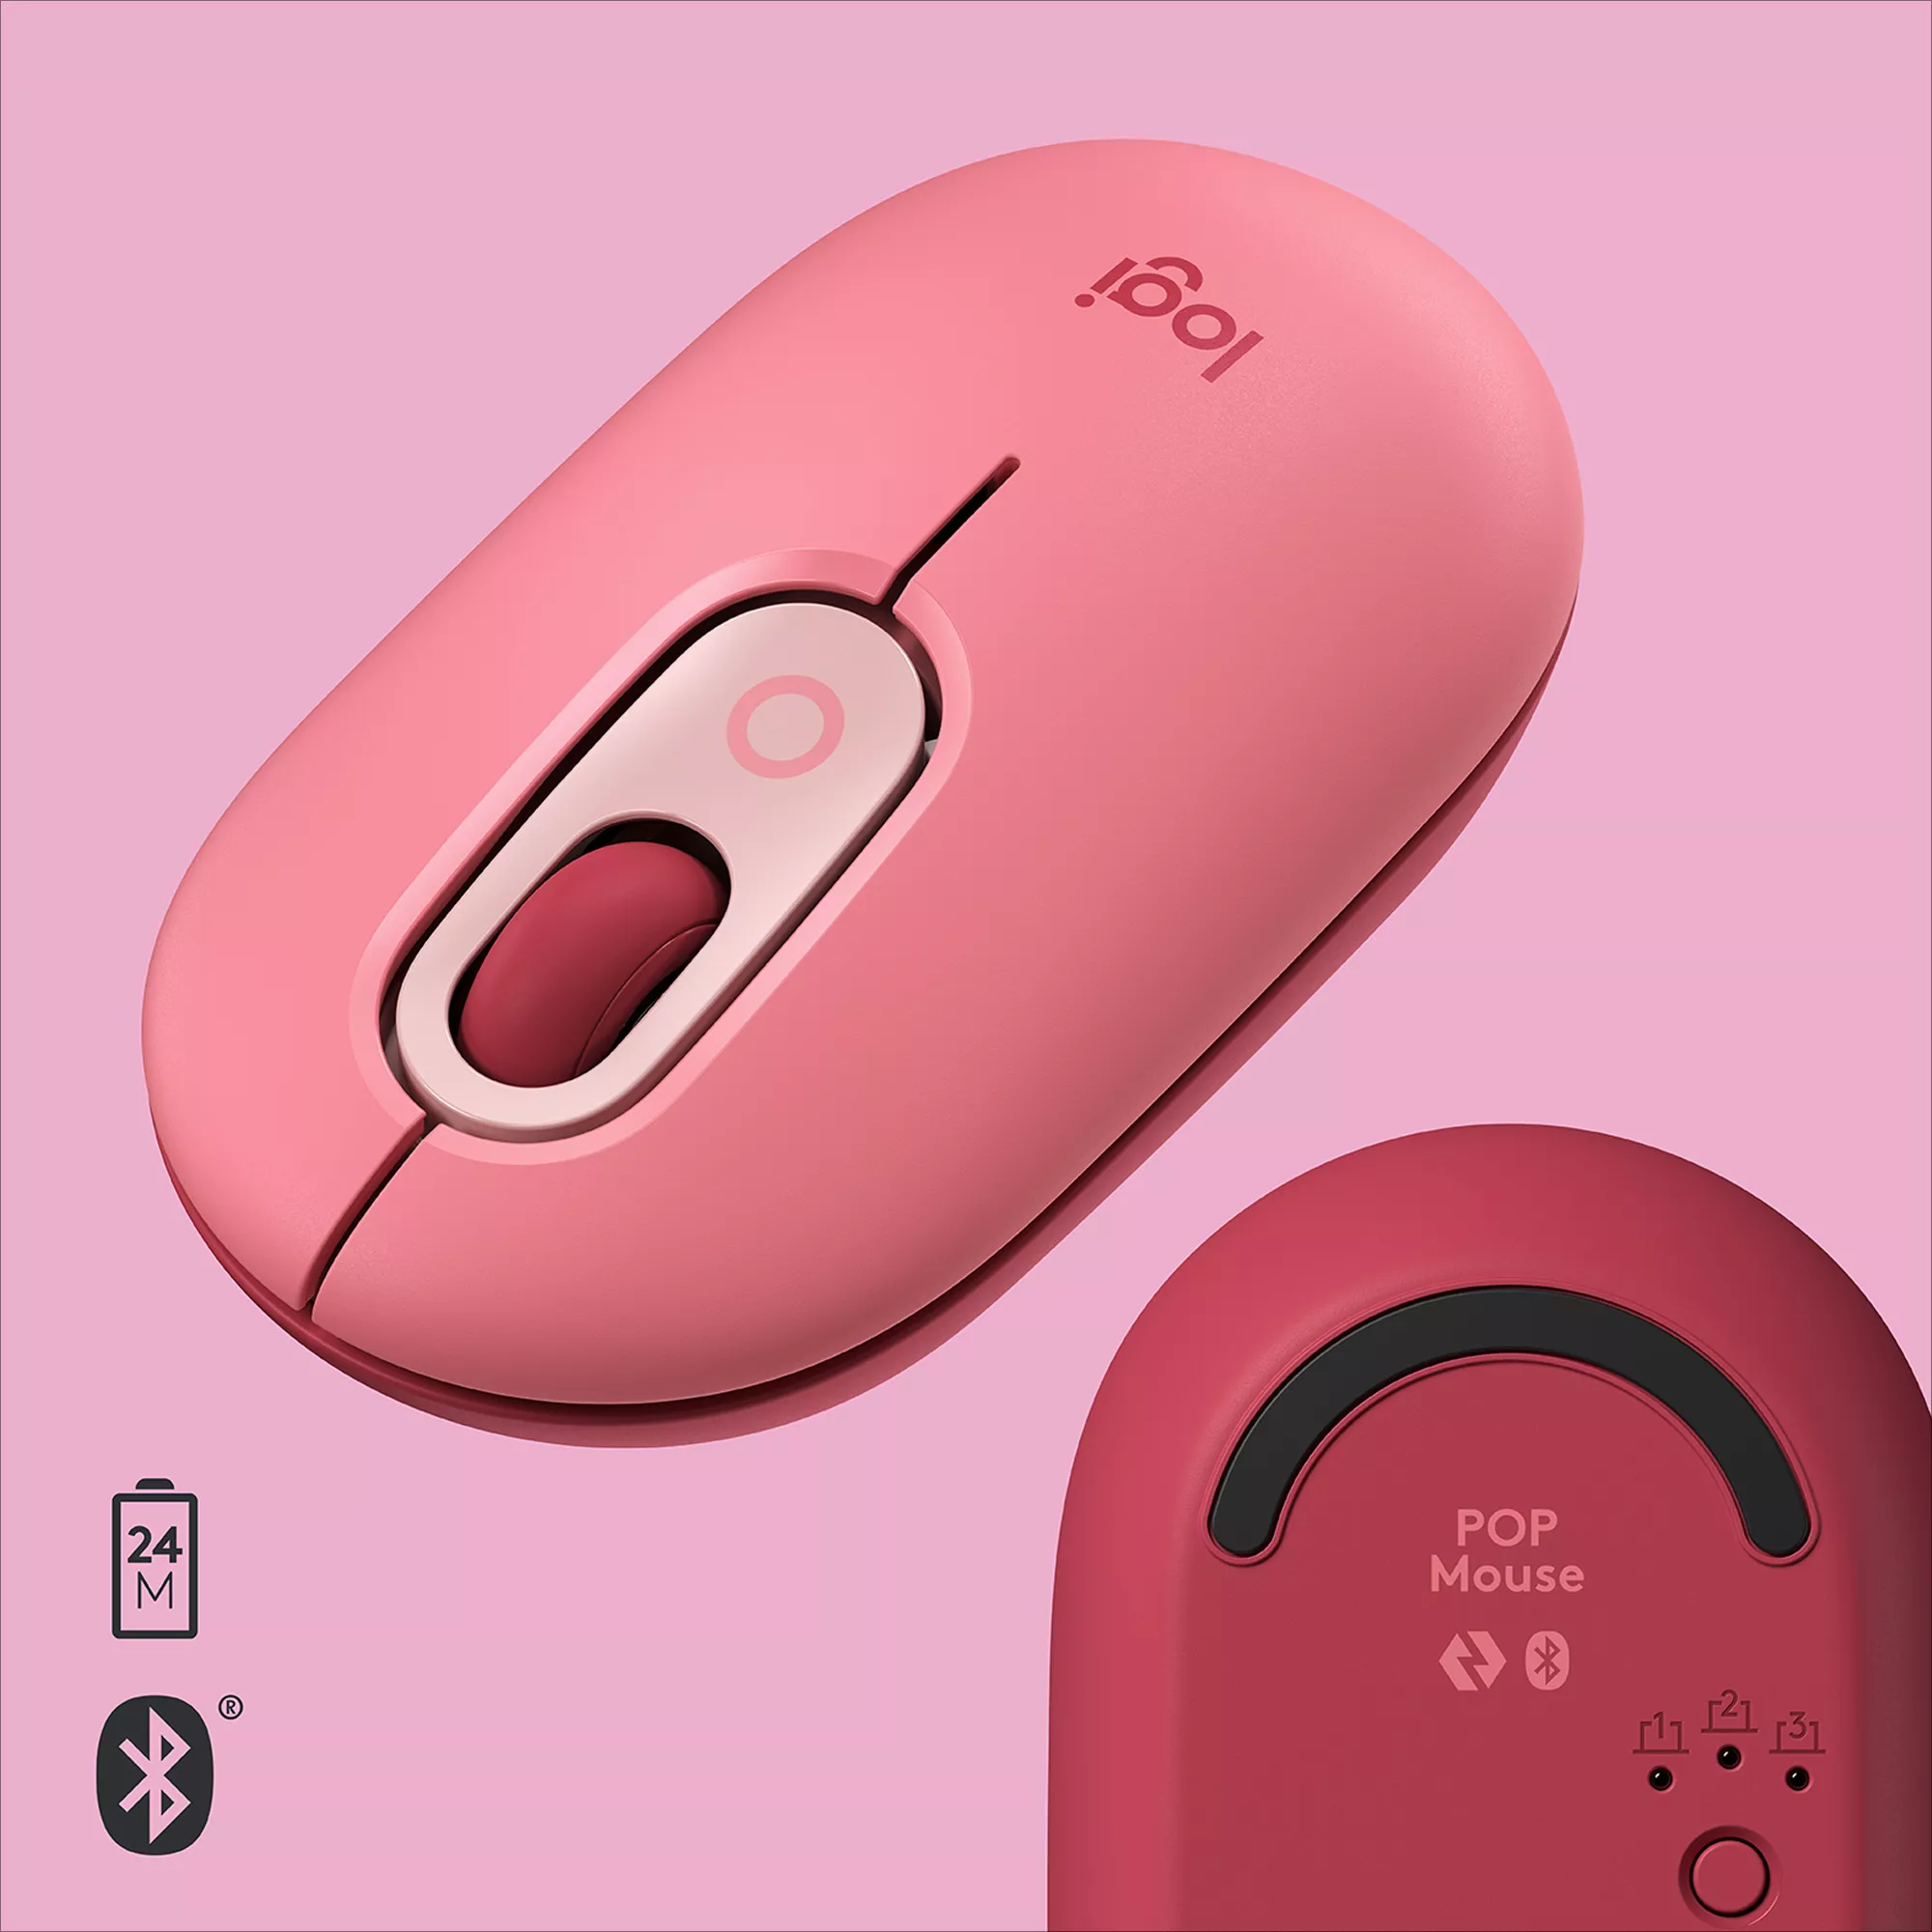 Vente LOGITECH POP Mouse customisable emoji optical 4 buttons Logitech au meilleur prix - visuel 6